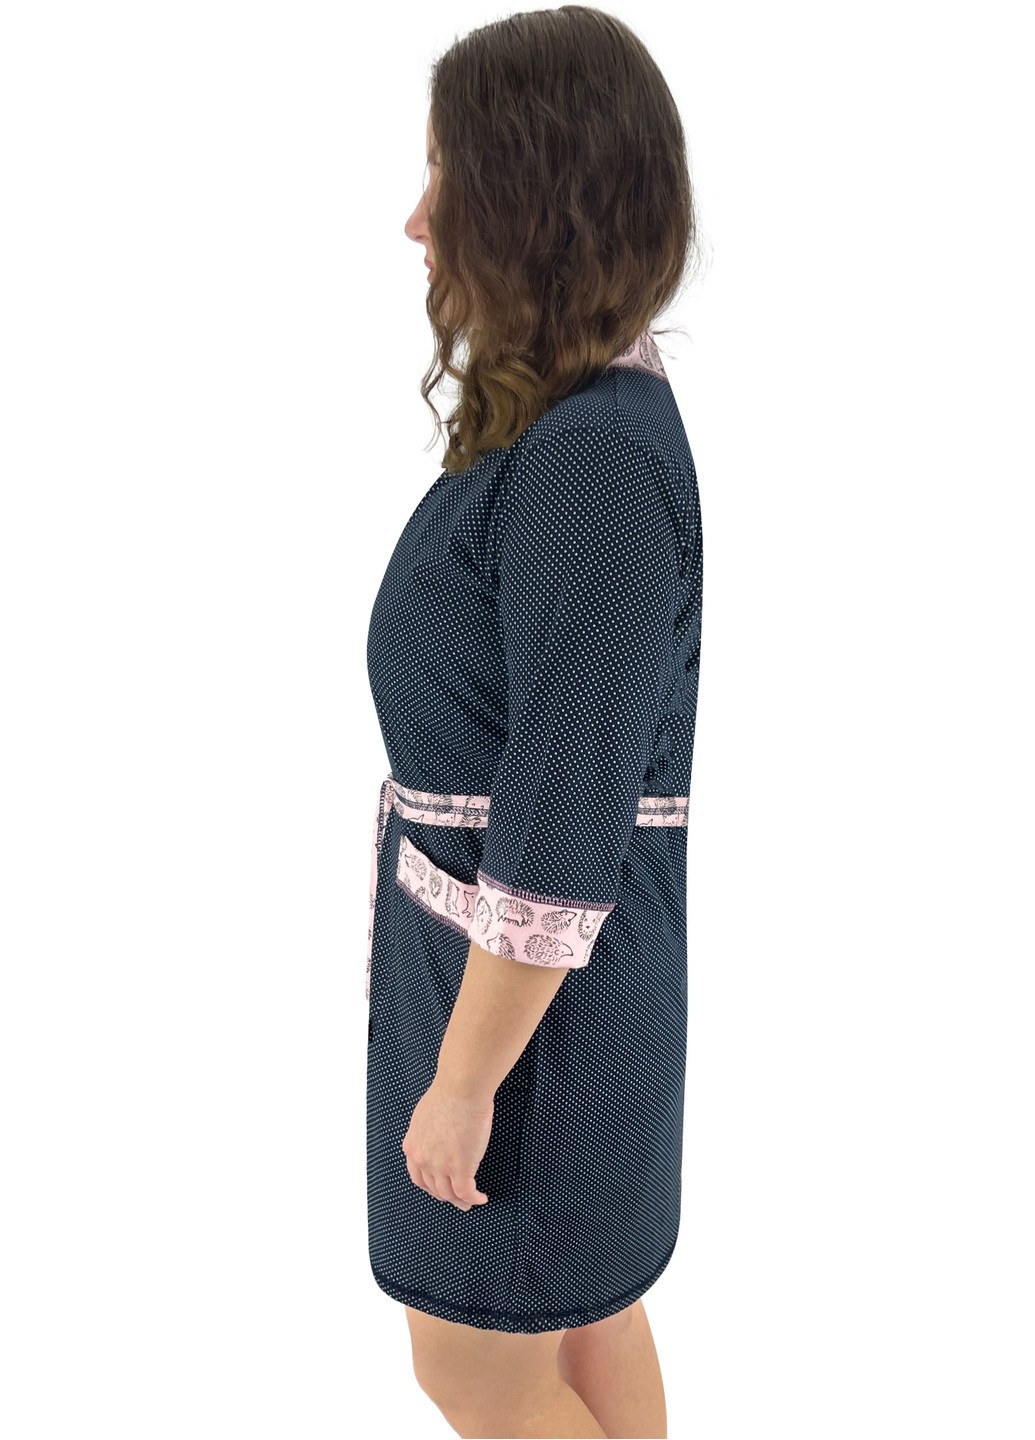 Комплект женский ажур ночная и халат ежик Жемчужина стилей 1422 (274260516)